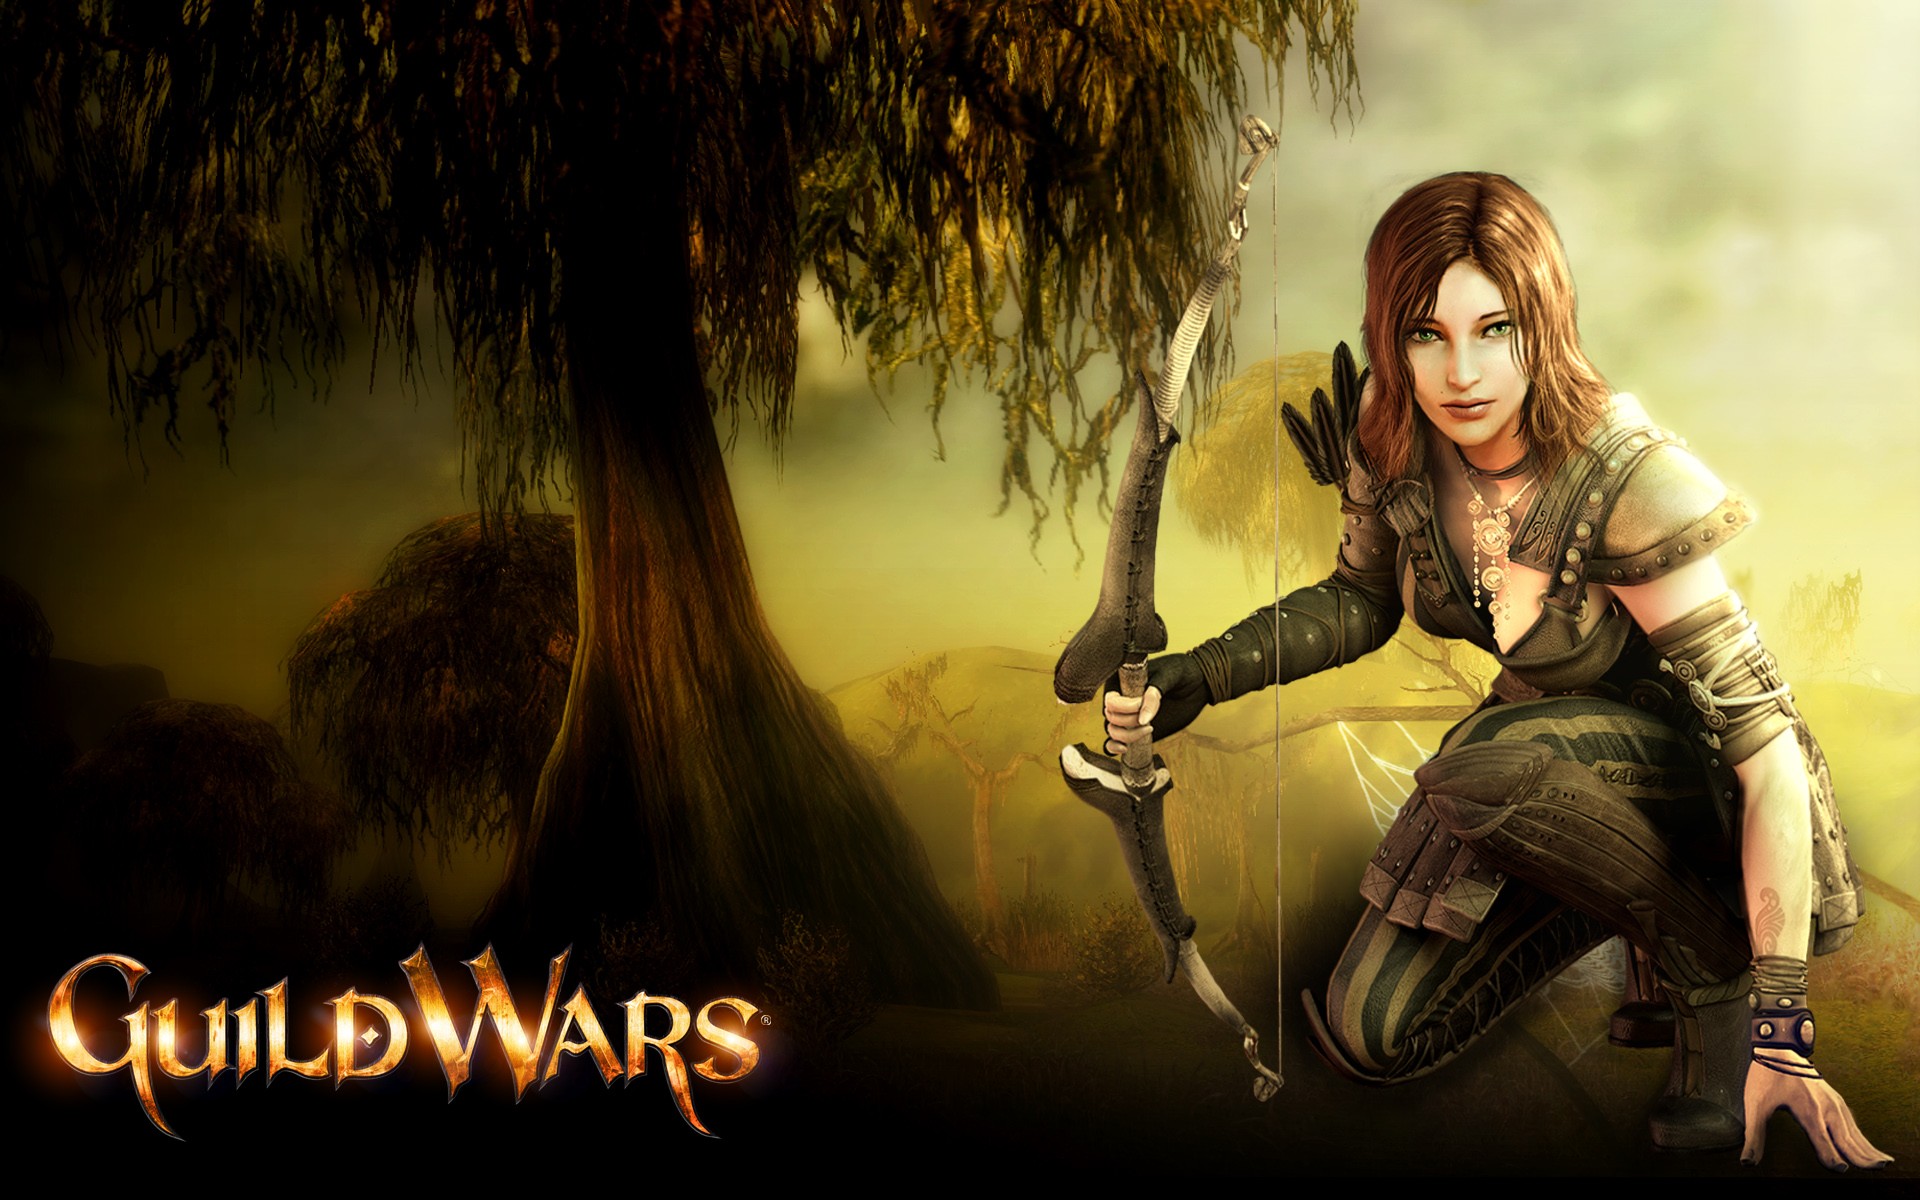 Descarga gratuita de fondo de pantalla para móvil de Mujer Guerrera, Guild Wars, Fantasía, Videojuego.